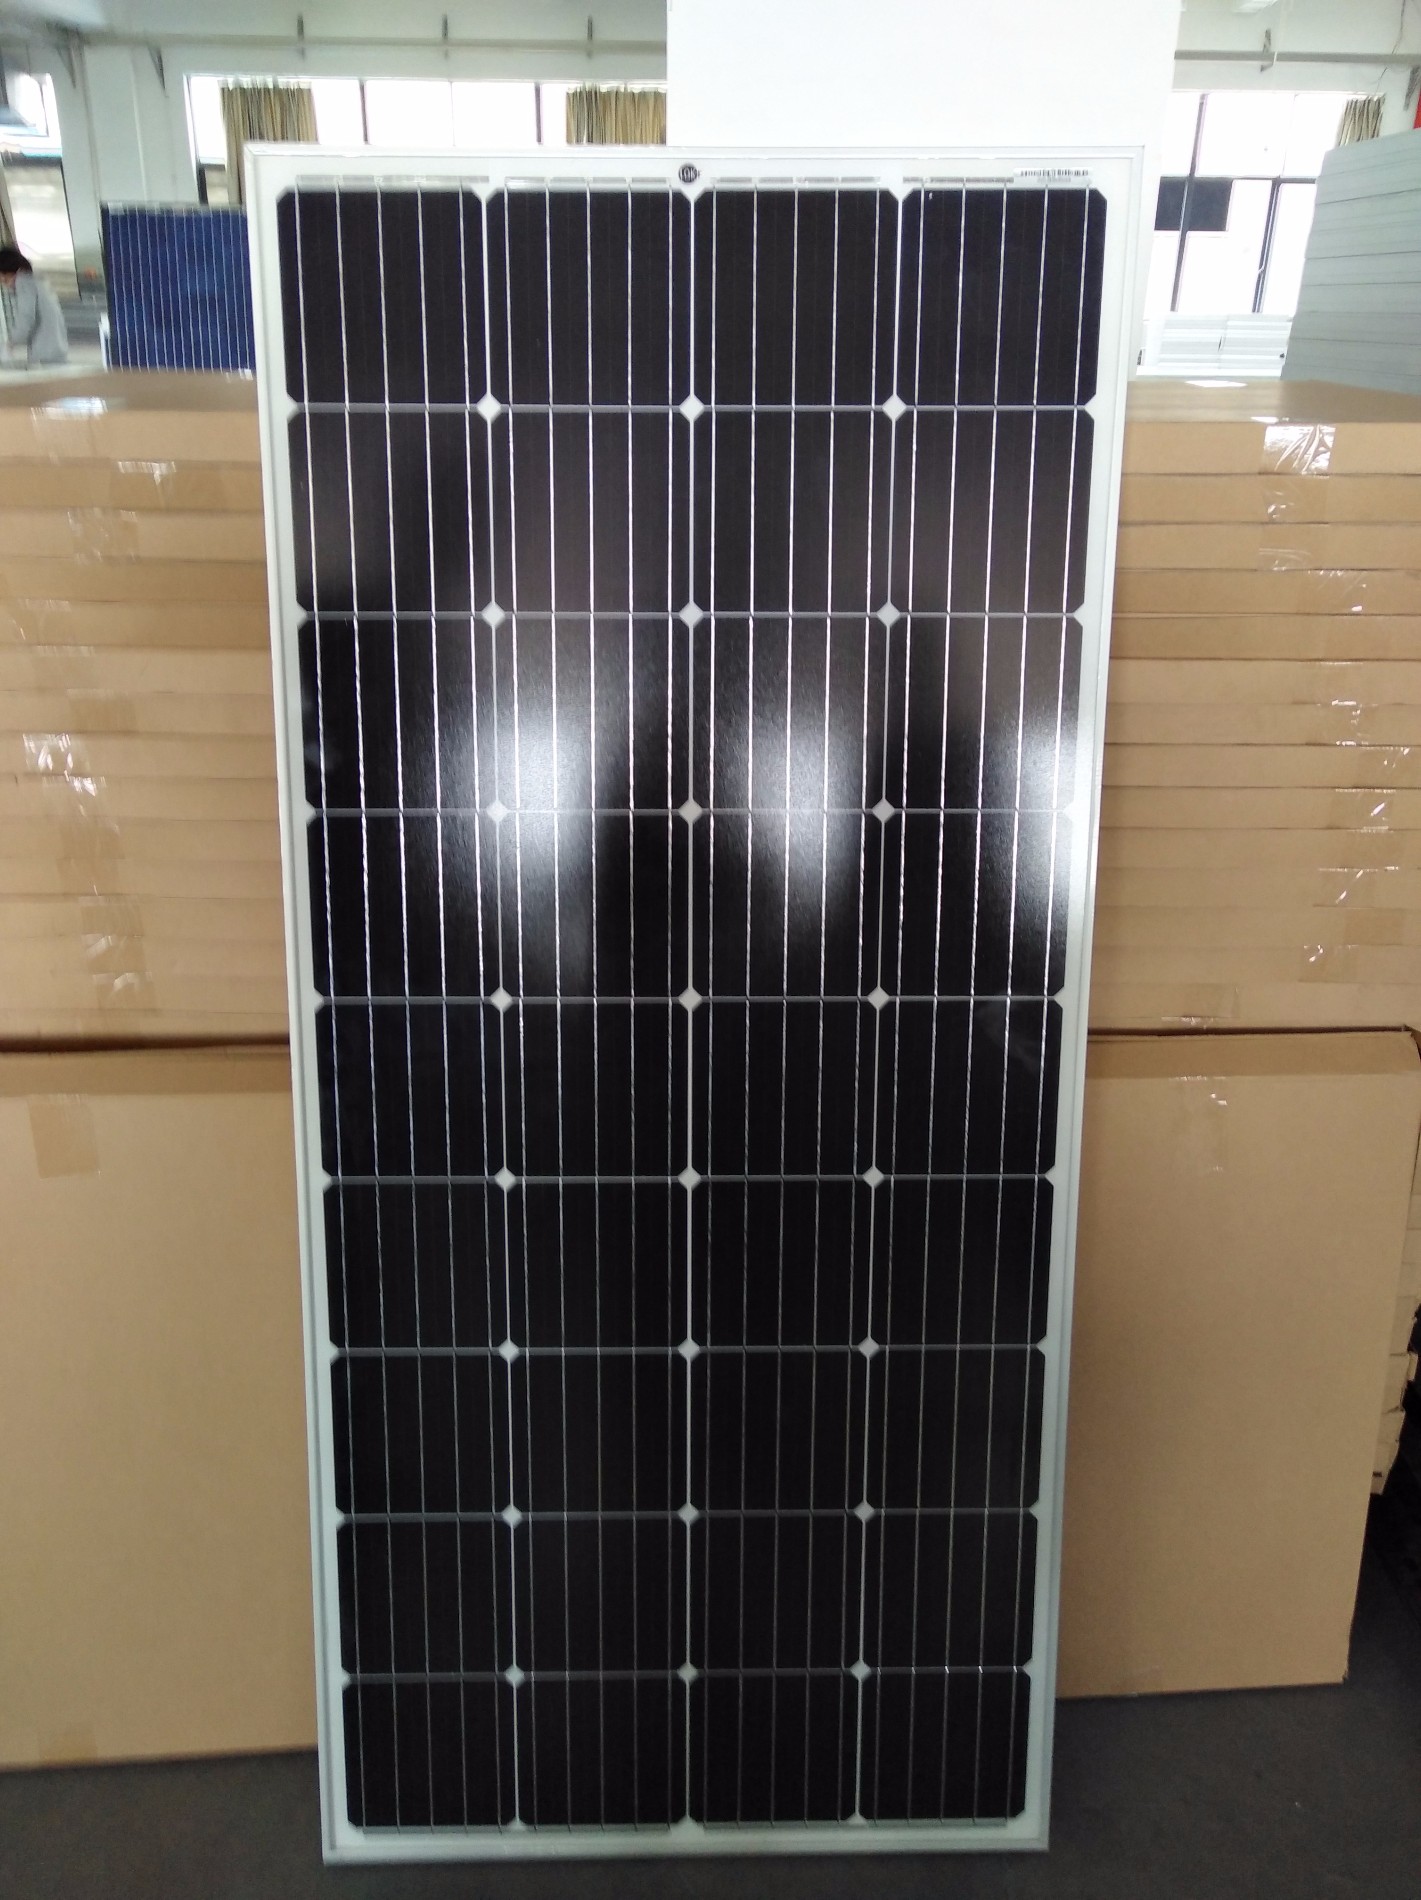 Venta Panel Solar Fotovoltaico Individual 150W, Comprar Celdas y Paneles Solares Marcas